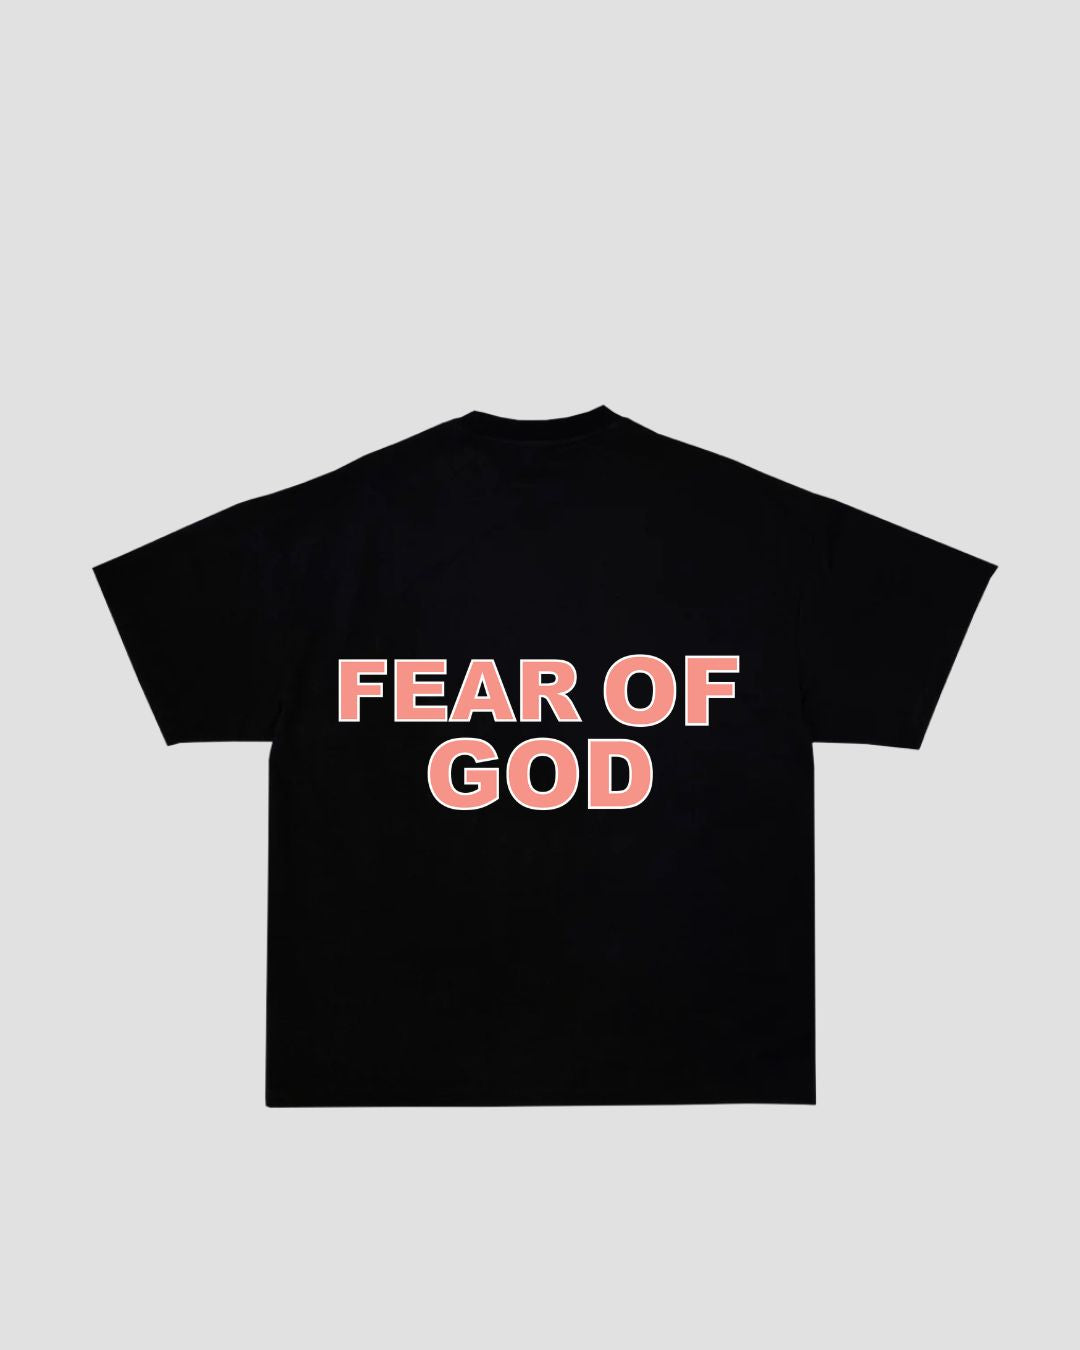 "FEAR OF GOD" TEE